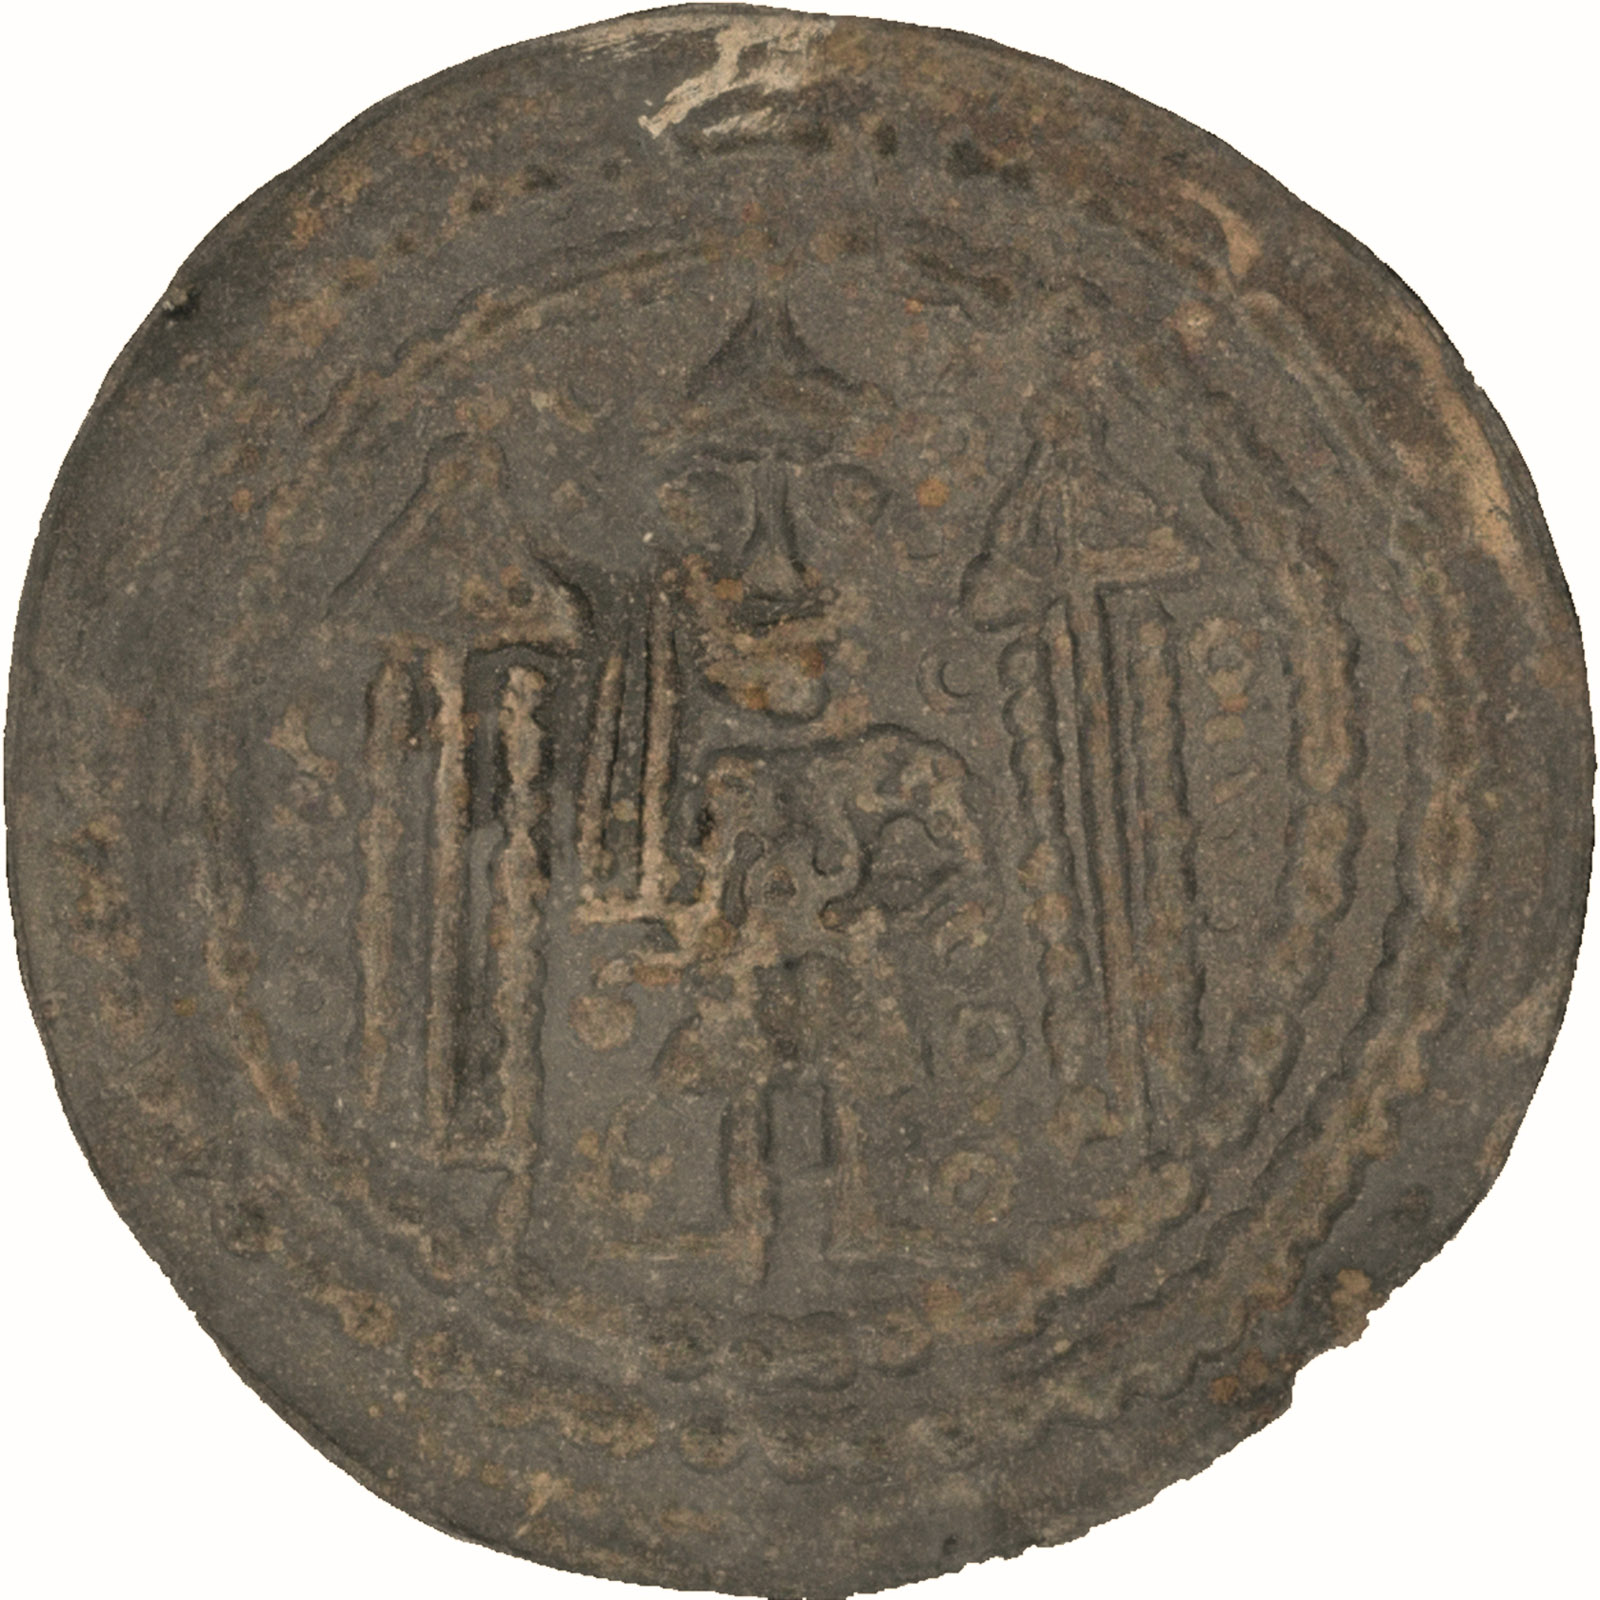 Münze des Münzherren Konrad Markgraf von Meißen, Prägedatum um 1150 – Darstellung der Grundfarbe.